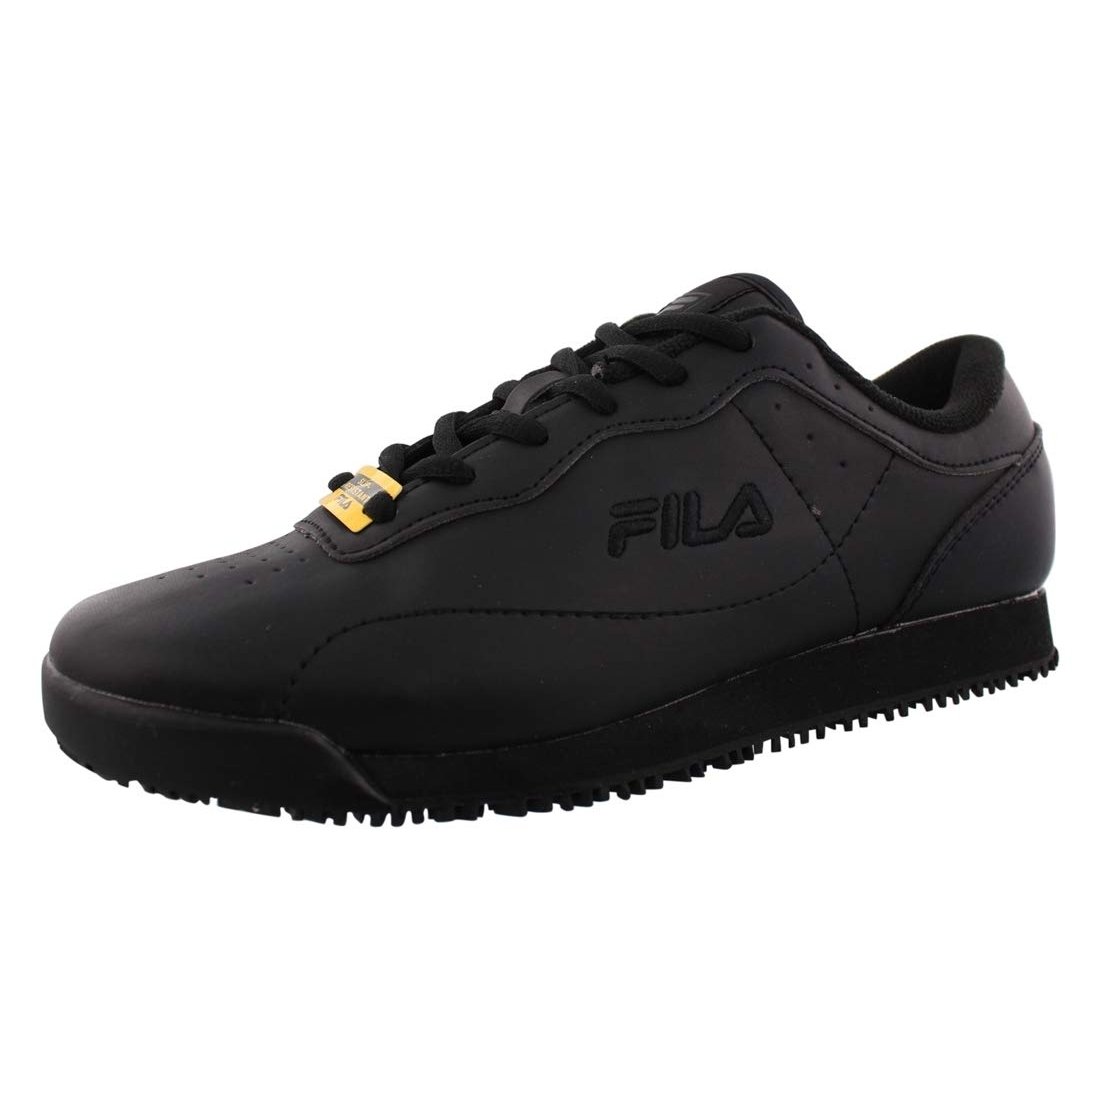 Fila Memory Viable Sr Wide Womens Shoes Size 10, Color: Black 0 BLK/BLK/BLK - Black (black 19-3911tcx), 13.0